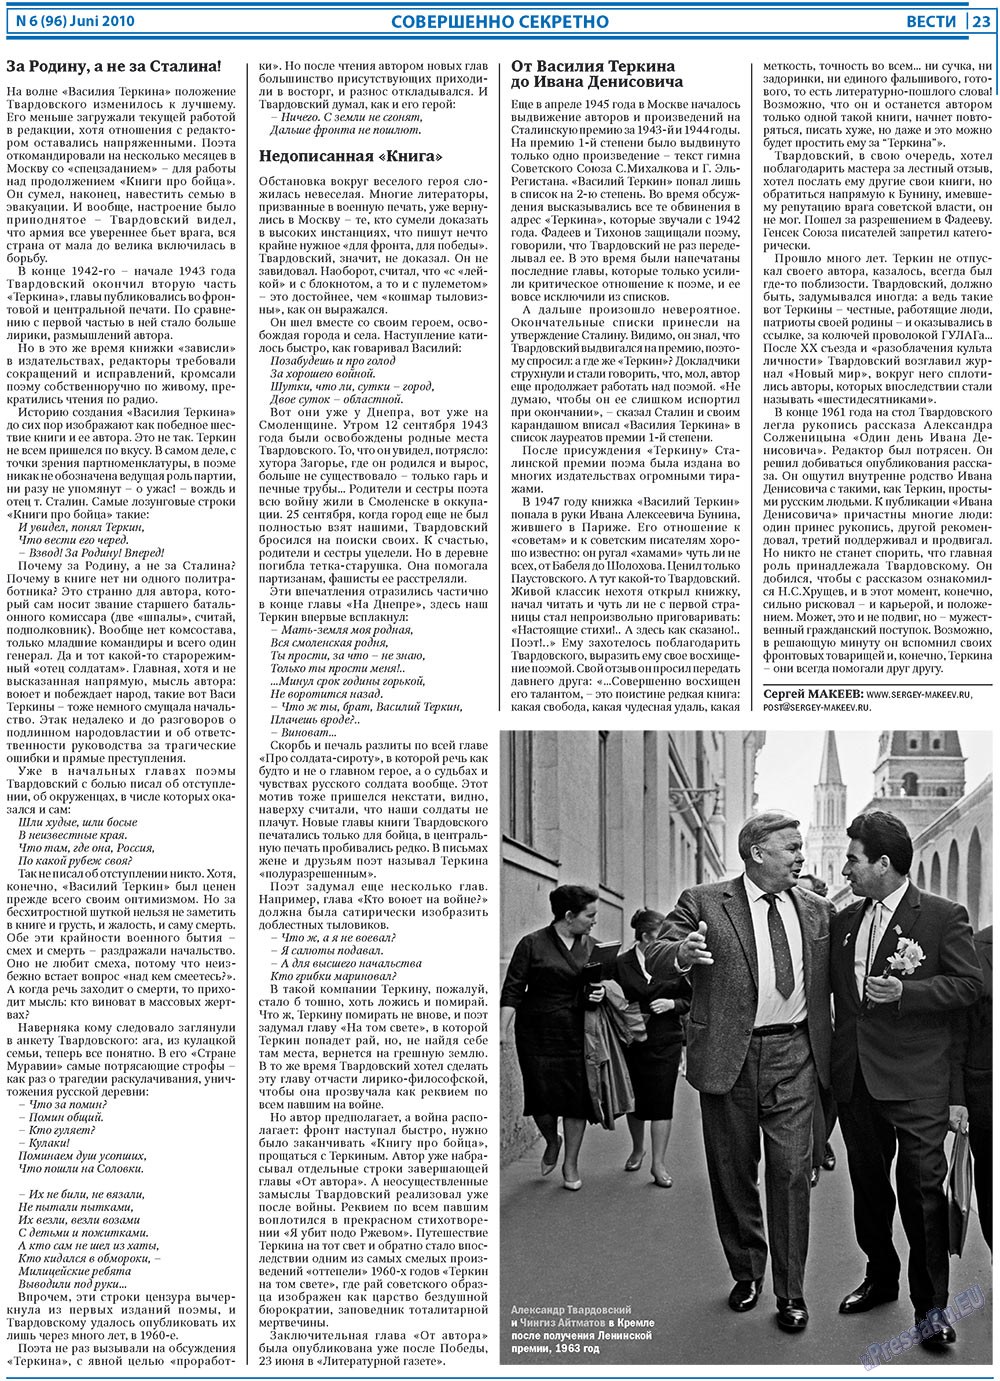 Вести, газета. 2010 №6 стр.23